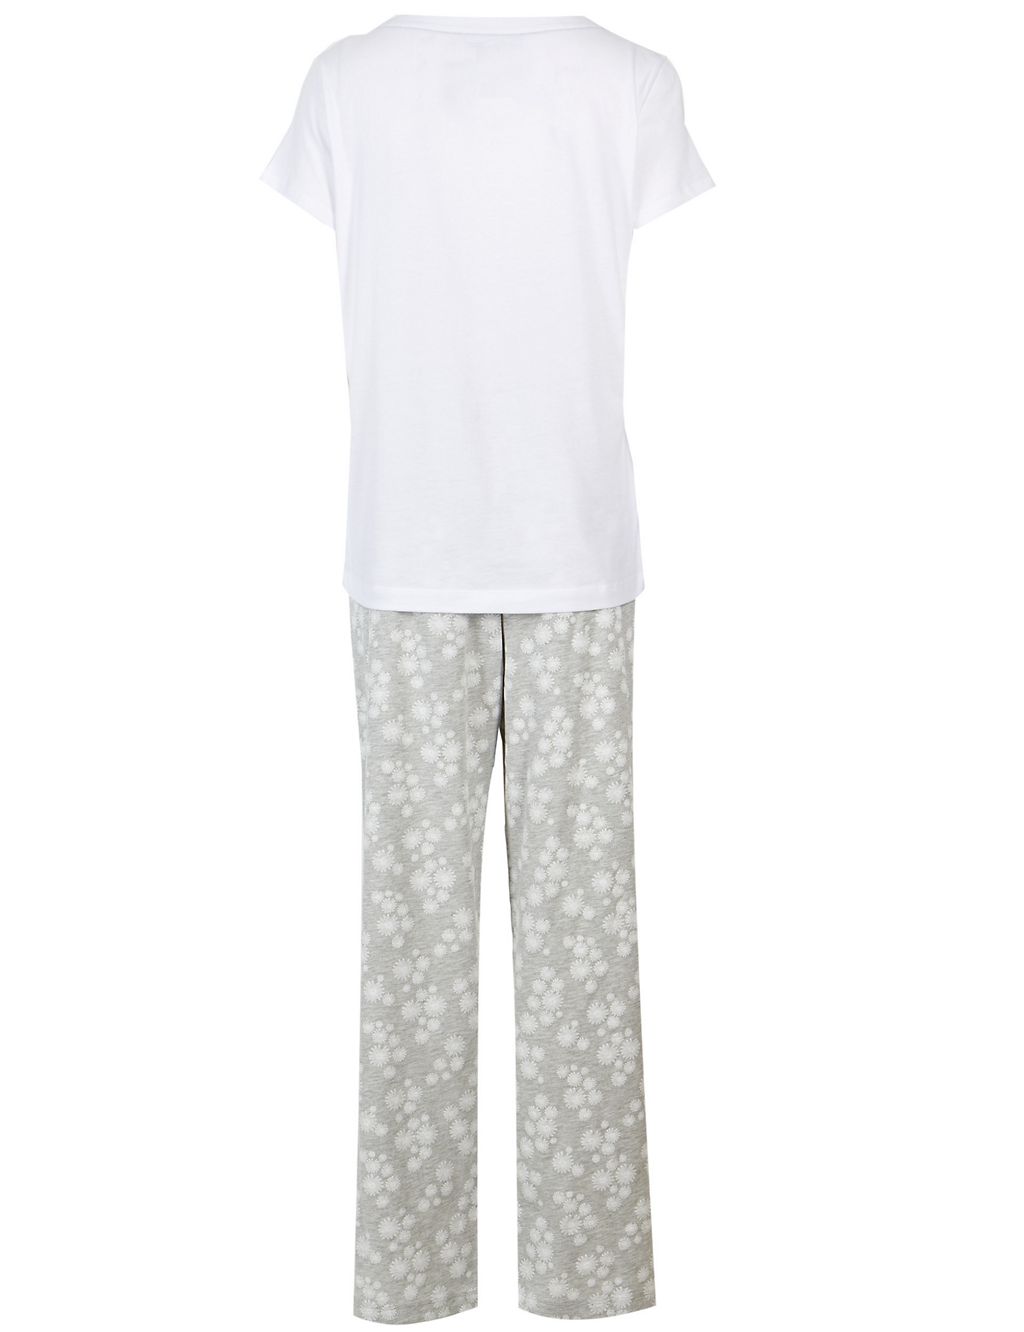 Novelty Short Sleeve Pyjama Set 6 of 6